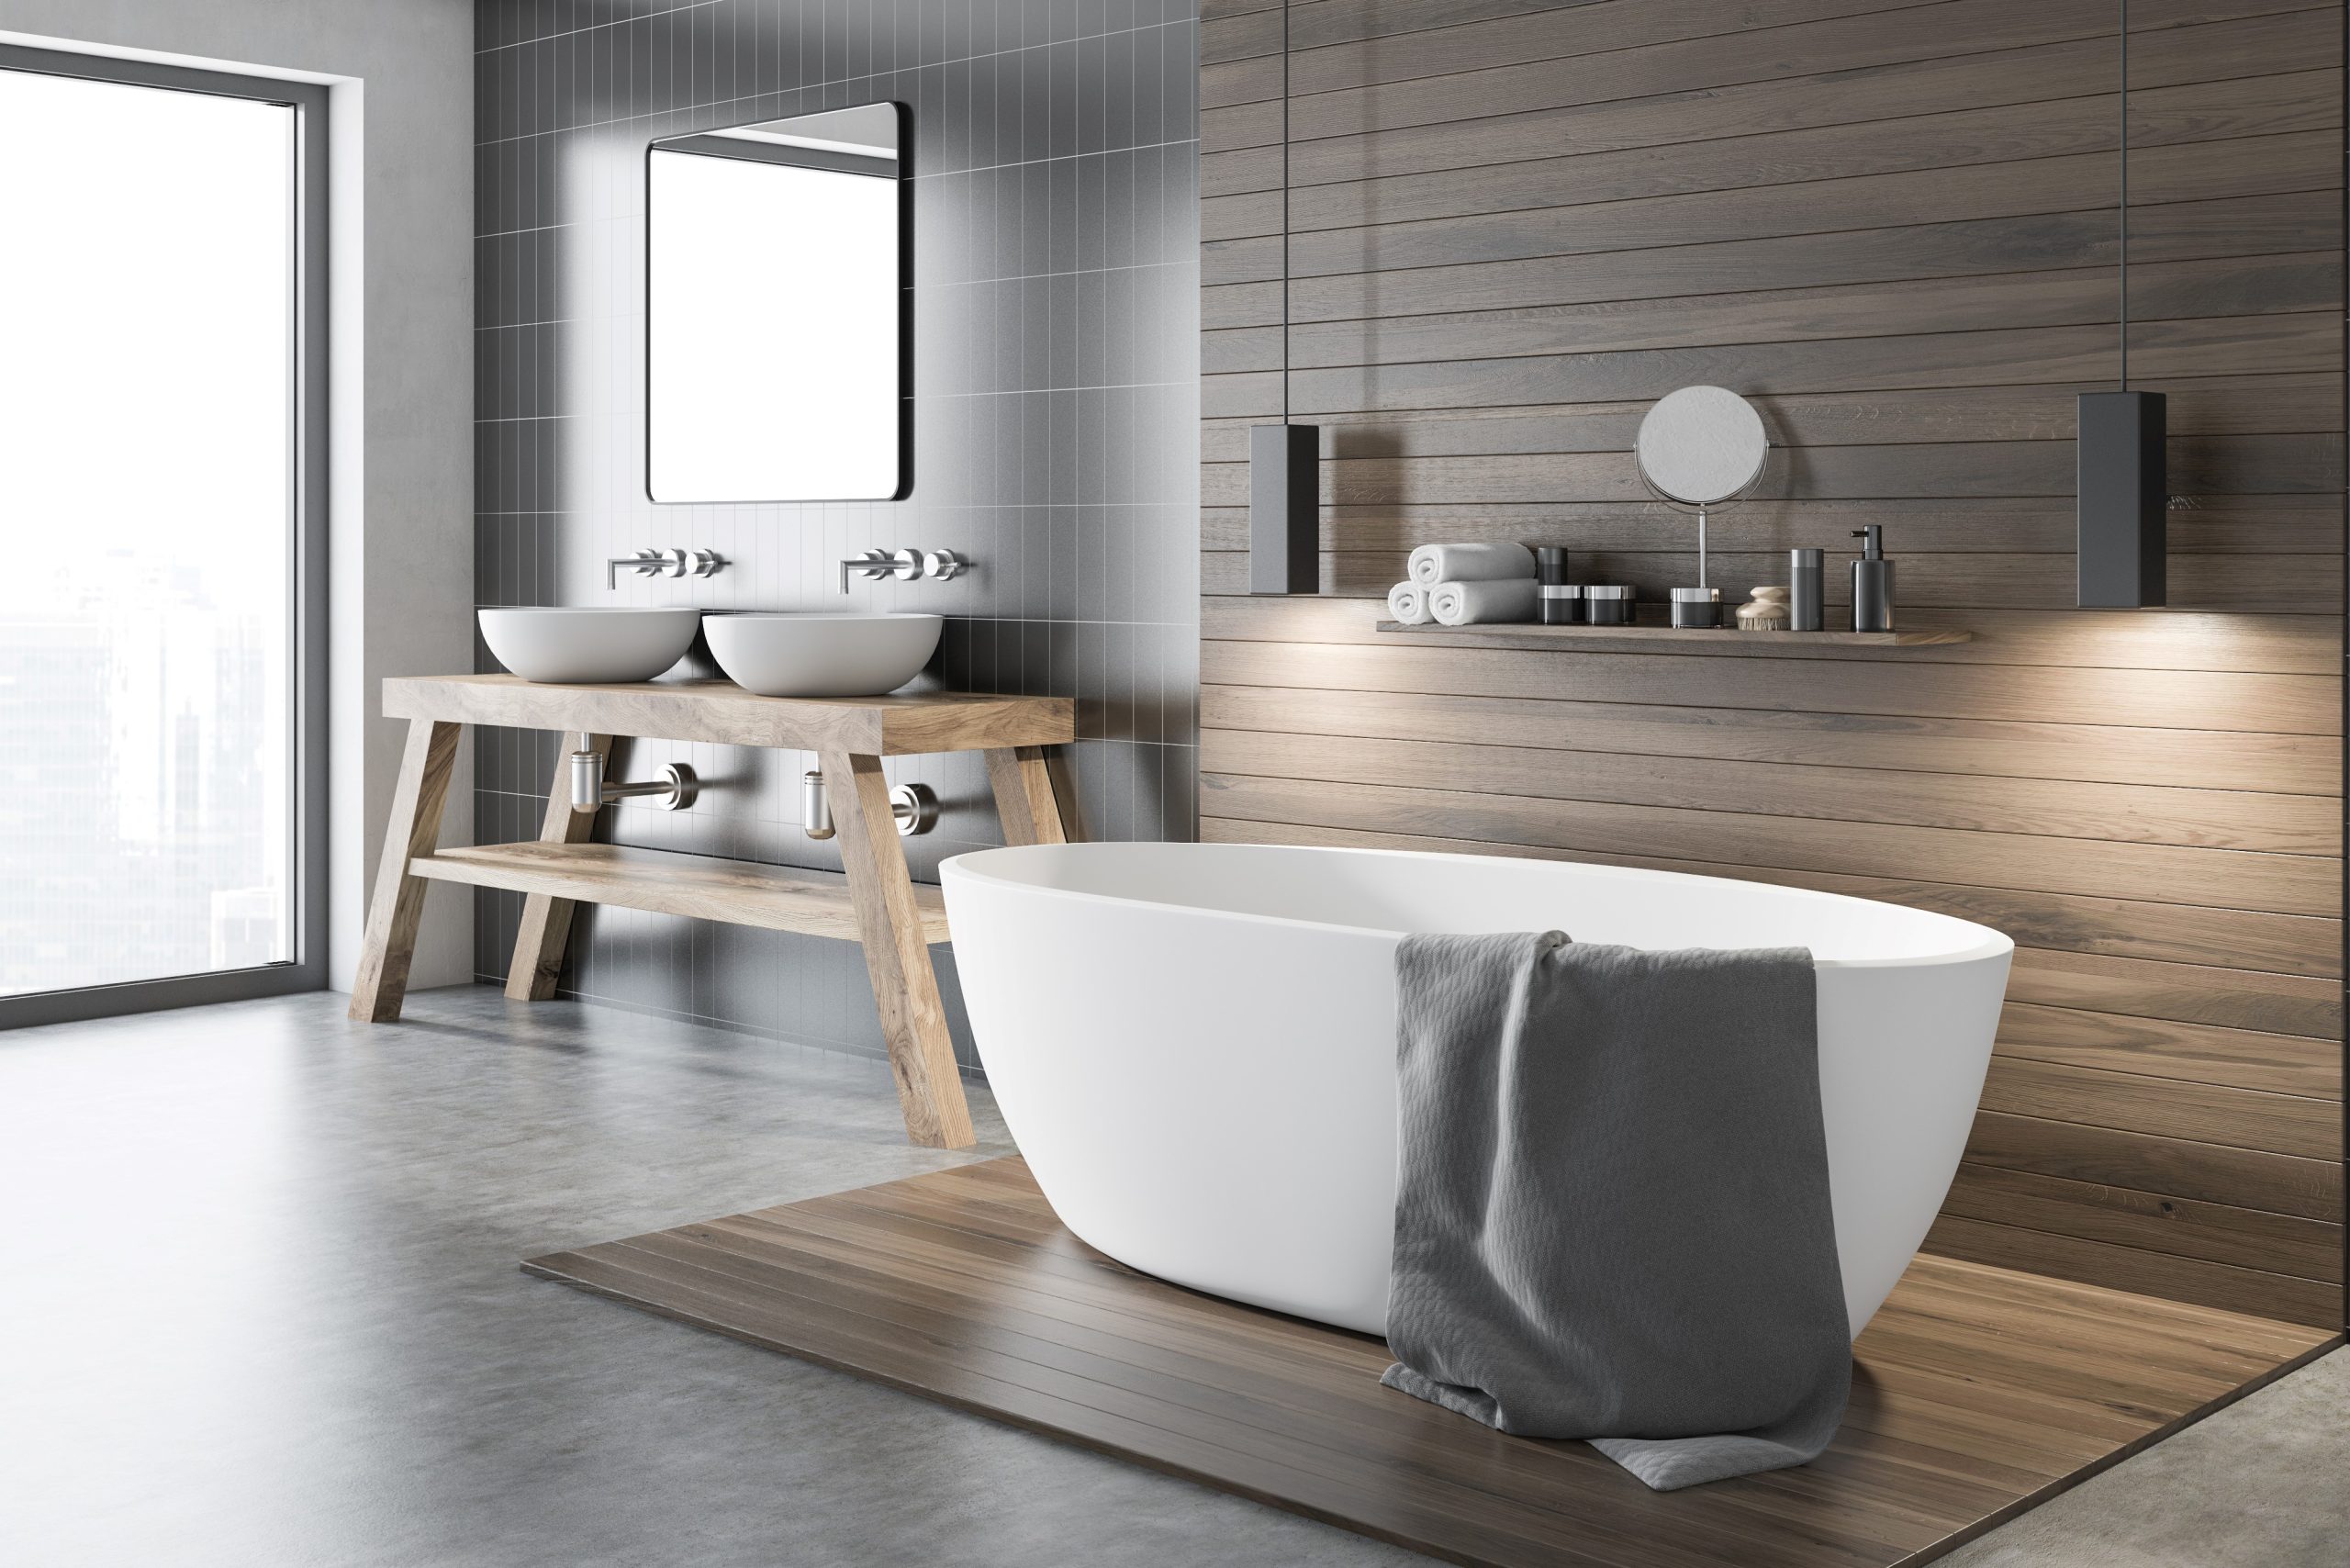 Badsanierung: Modernes Badezimmer mit freistehender Badewanne, Doppelwaschtisch und Holzdetails.